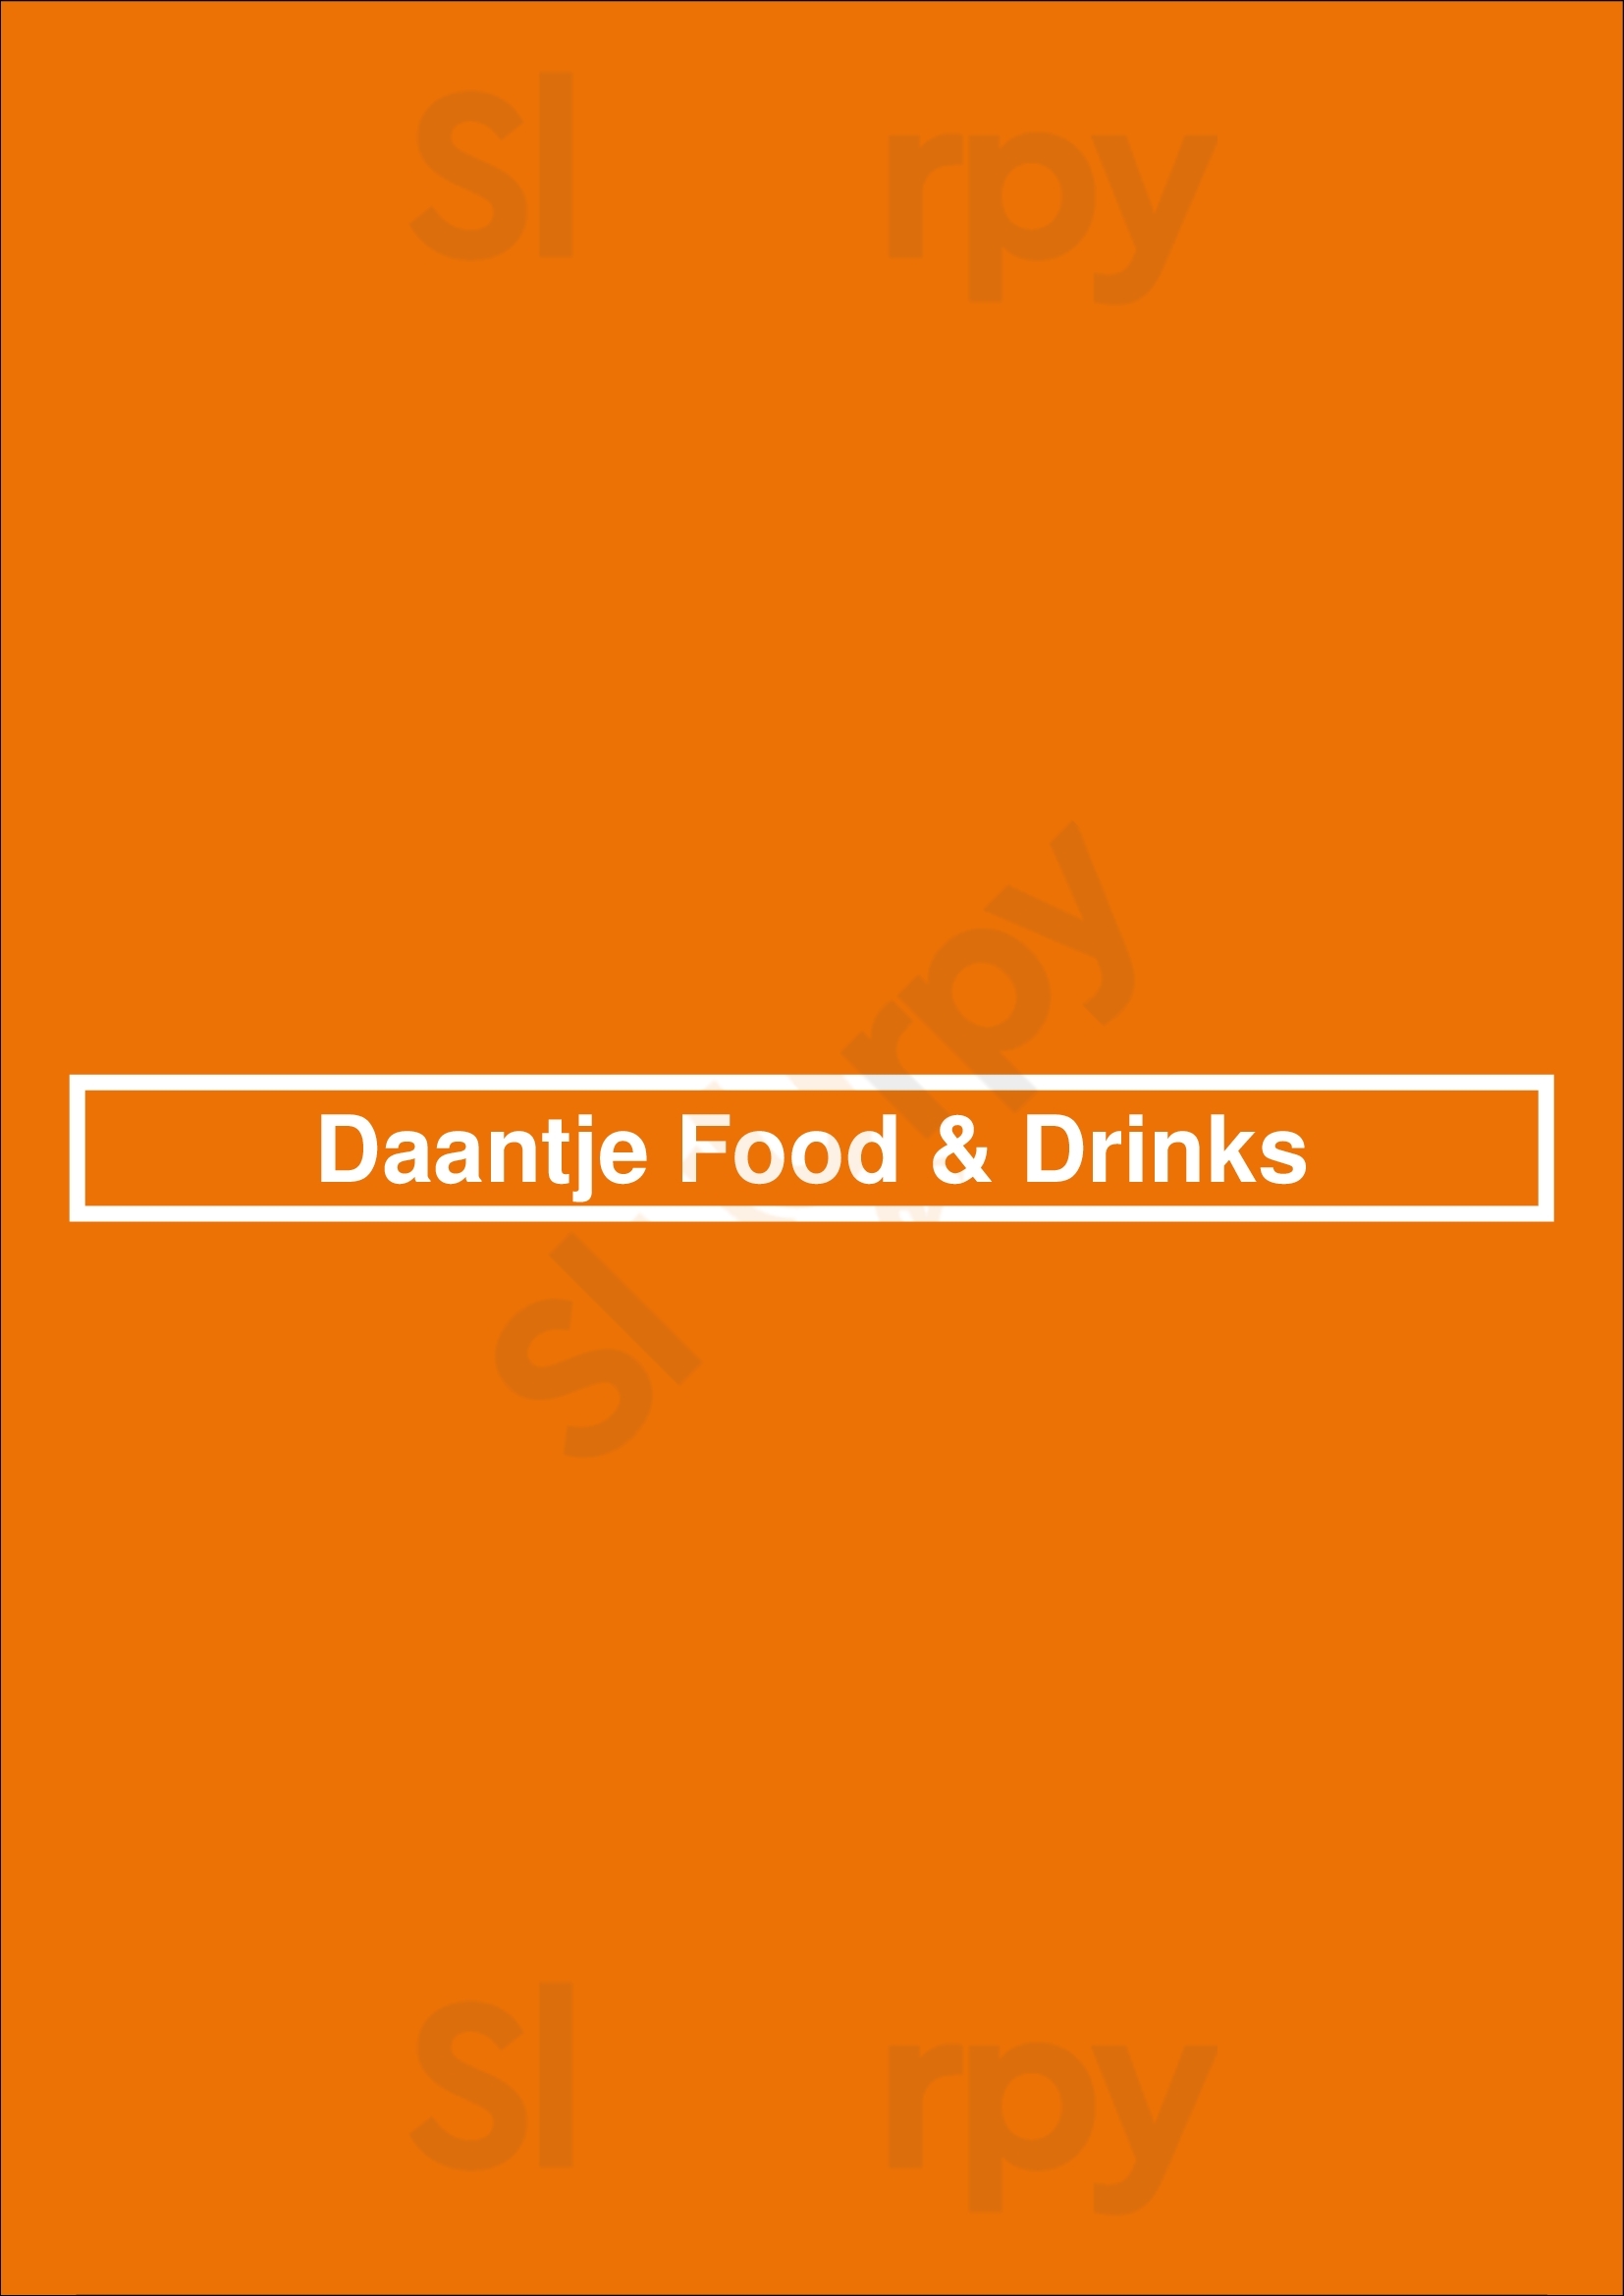 Daantje Food & Drinks Dordrecht Menu - 1